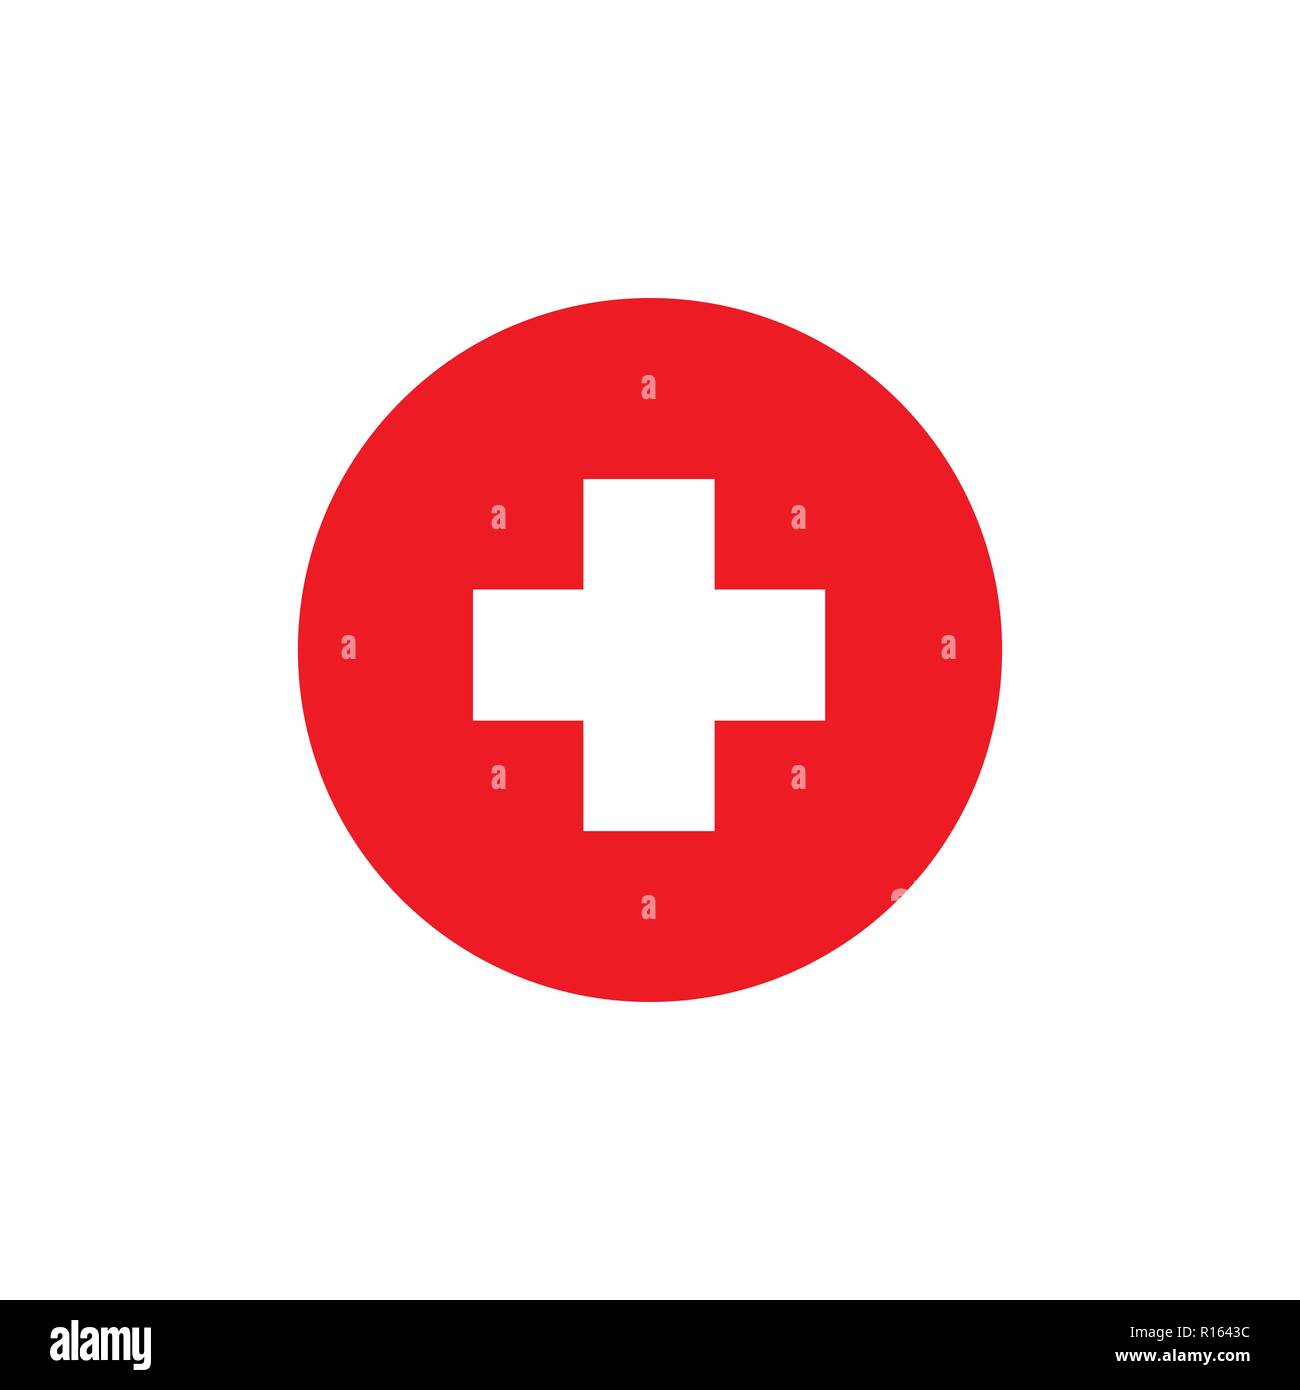 Croix rouge icone Banque de photographies et d'images à haute résolution -  Alamy